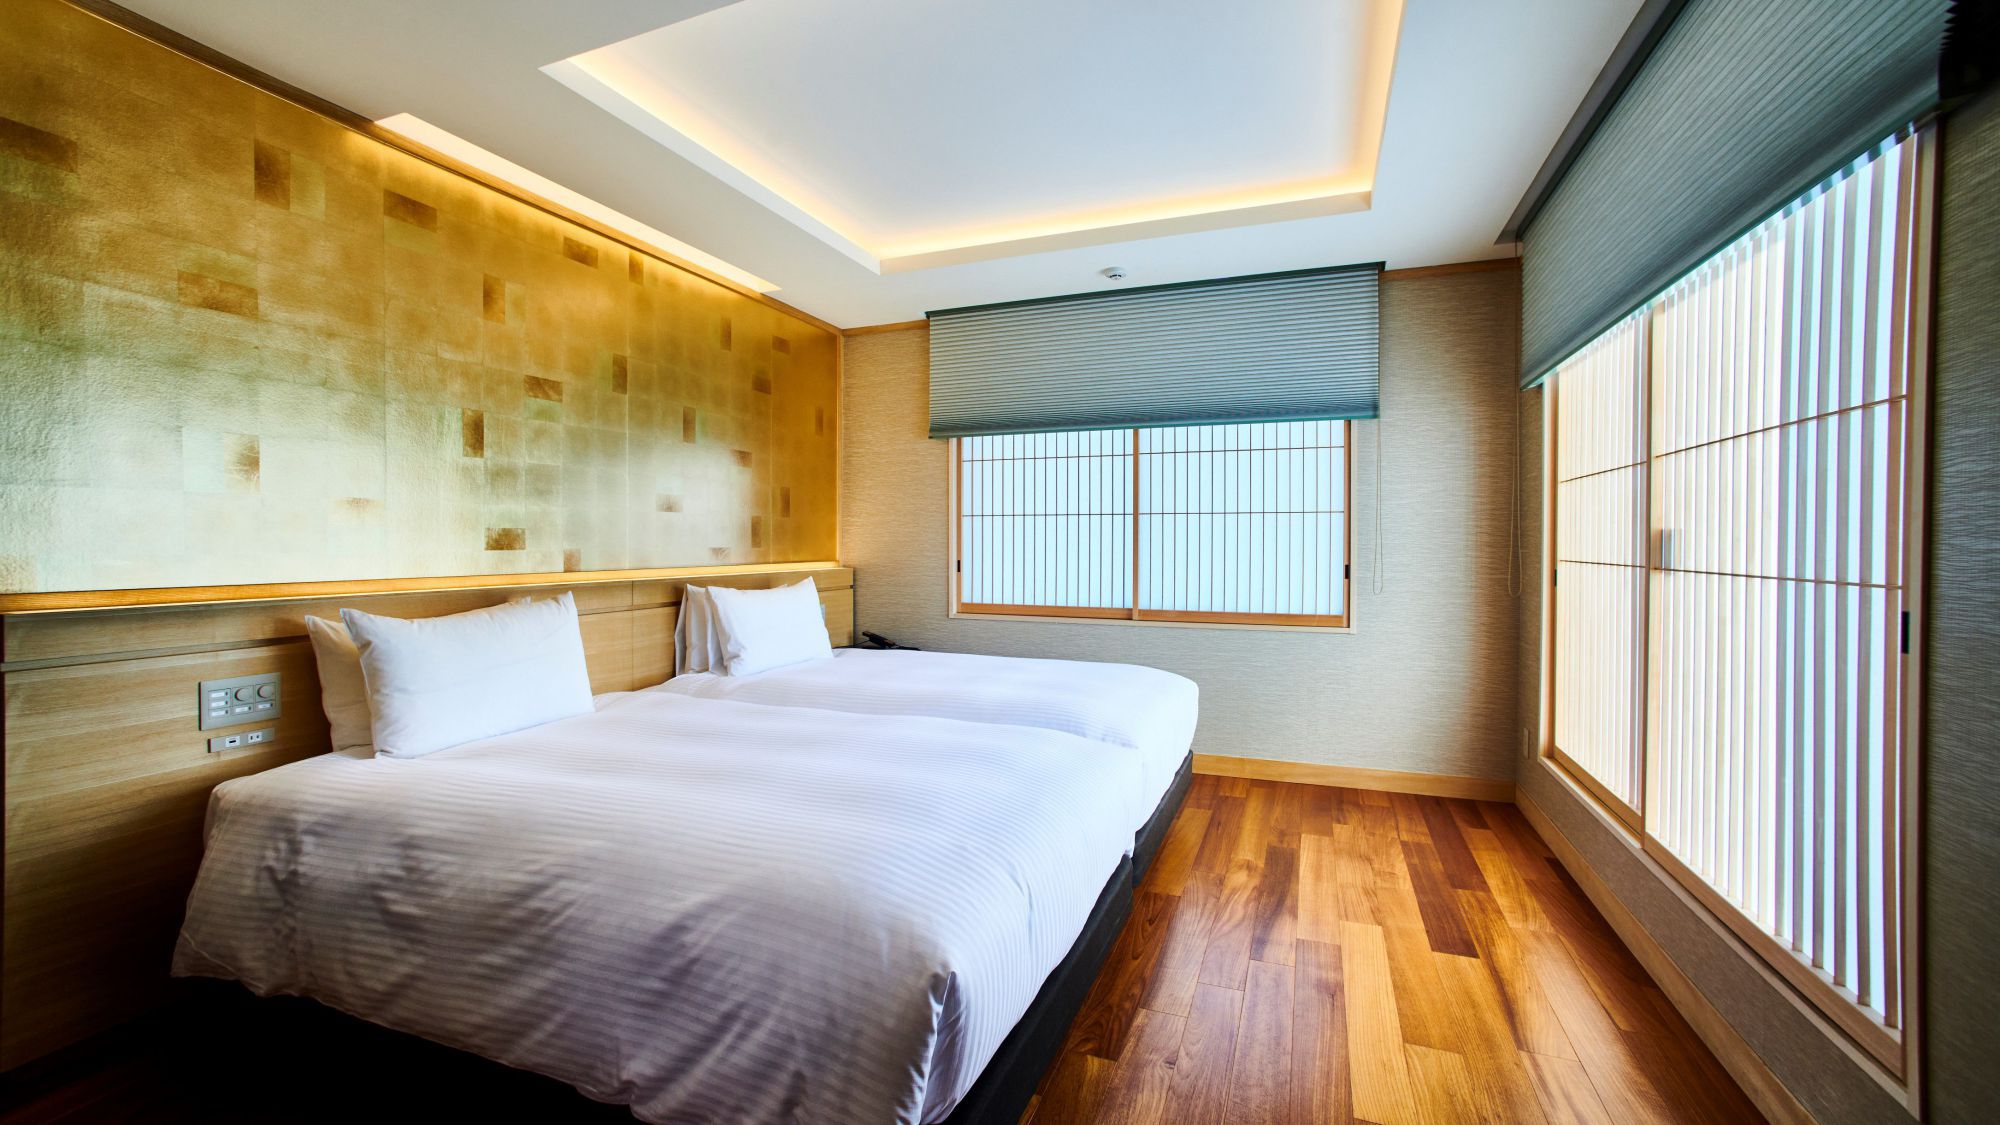 ■「江の島ホテル」スイート客室『露天風呂付きスイートルーム』